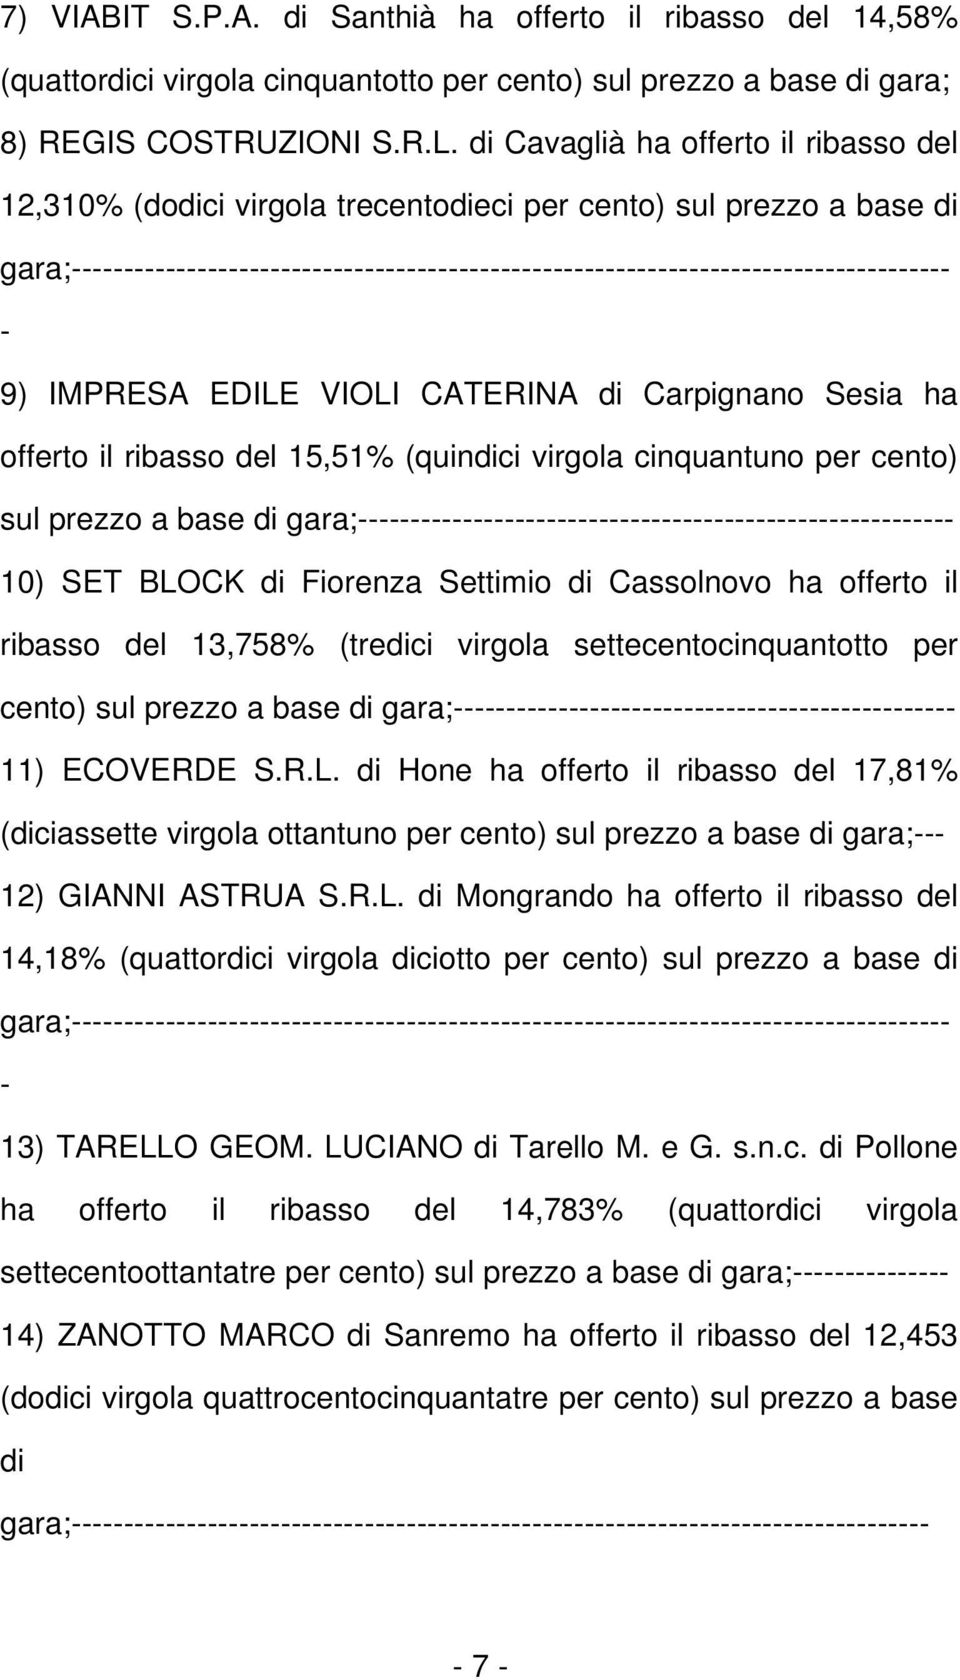 9) IMPRESA EDILE VIOLI CATERINA di Carpignano Sesia ha offerto il ribasso del 15,51% (quindici virgola cinquantuno per cento) sul prezzo a base di